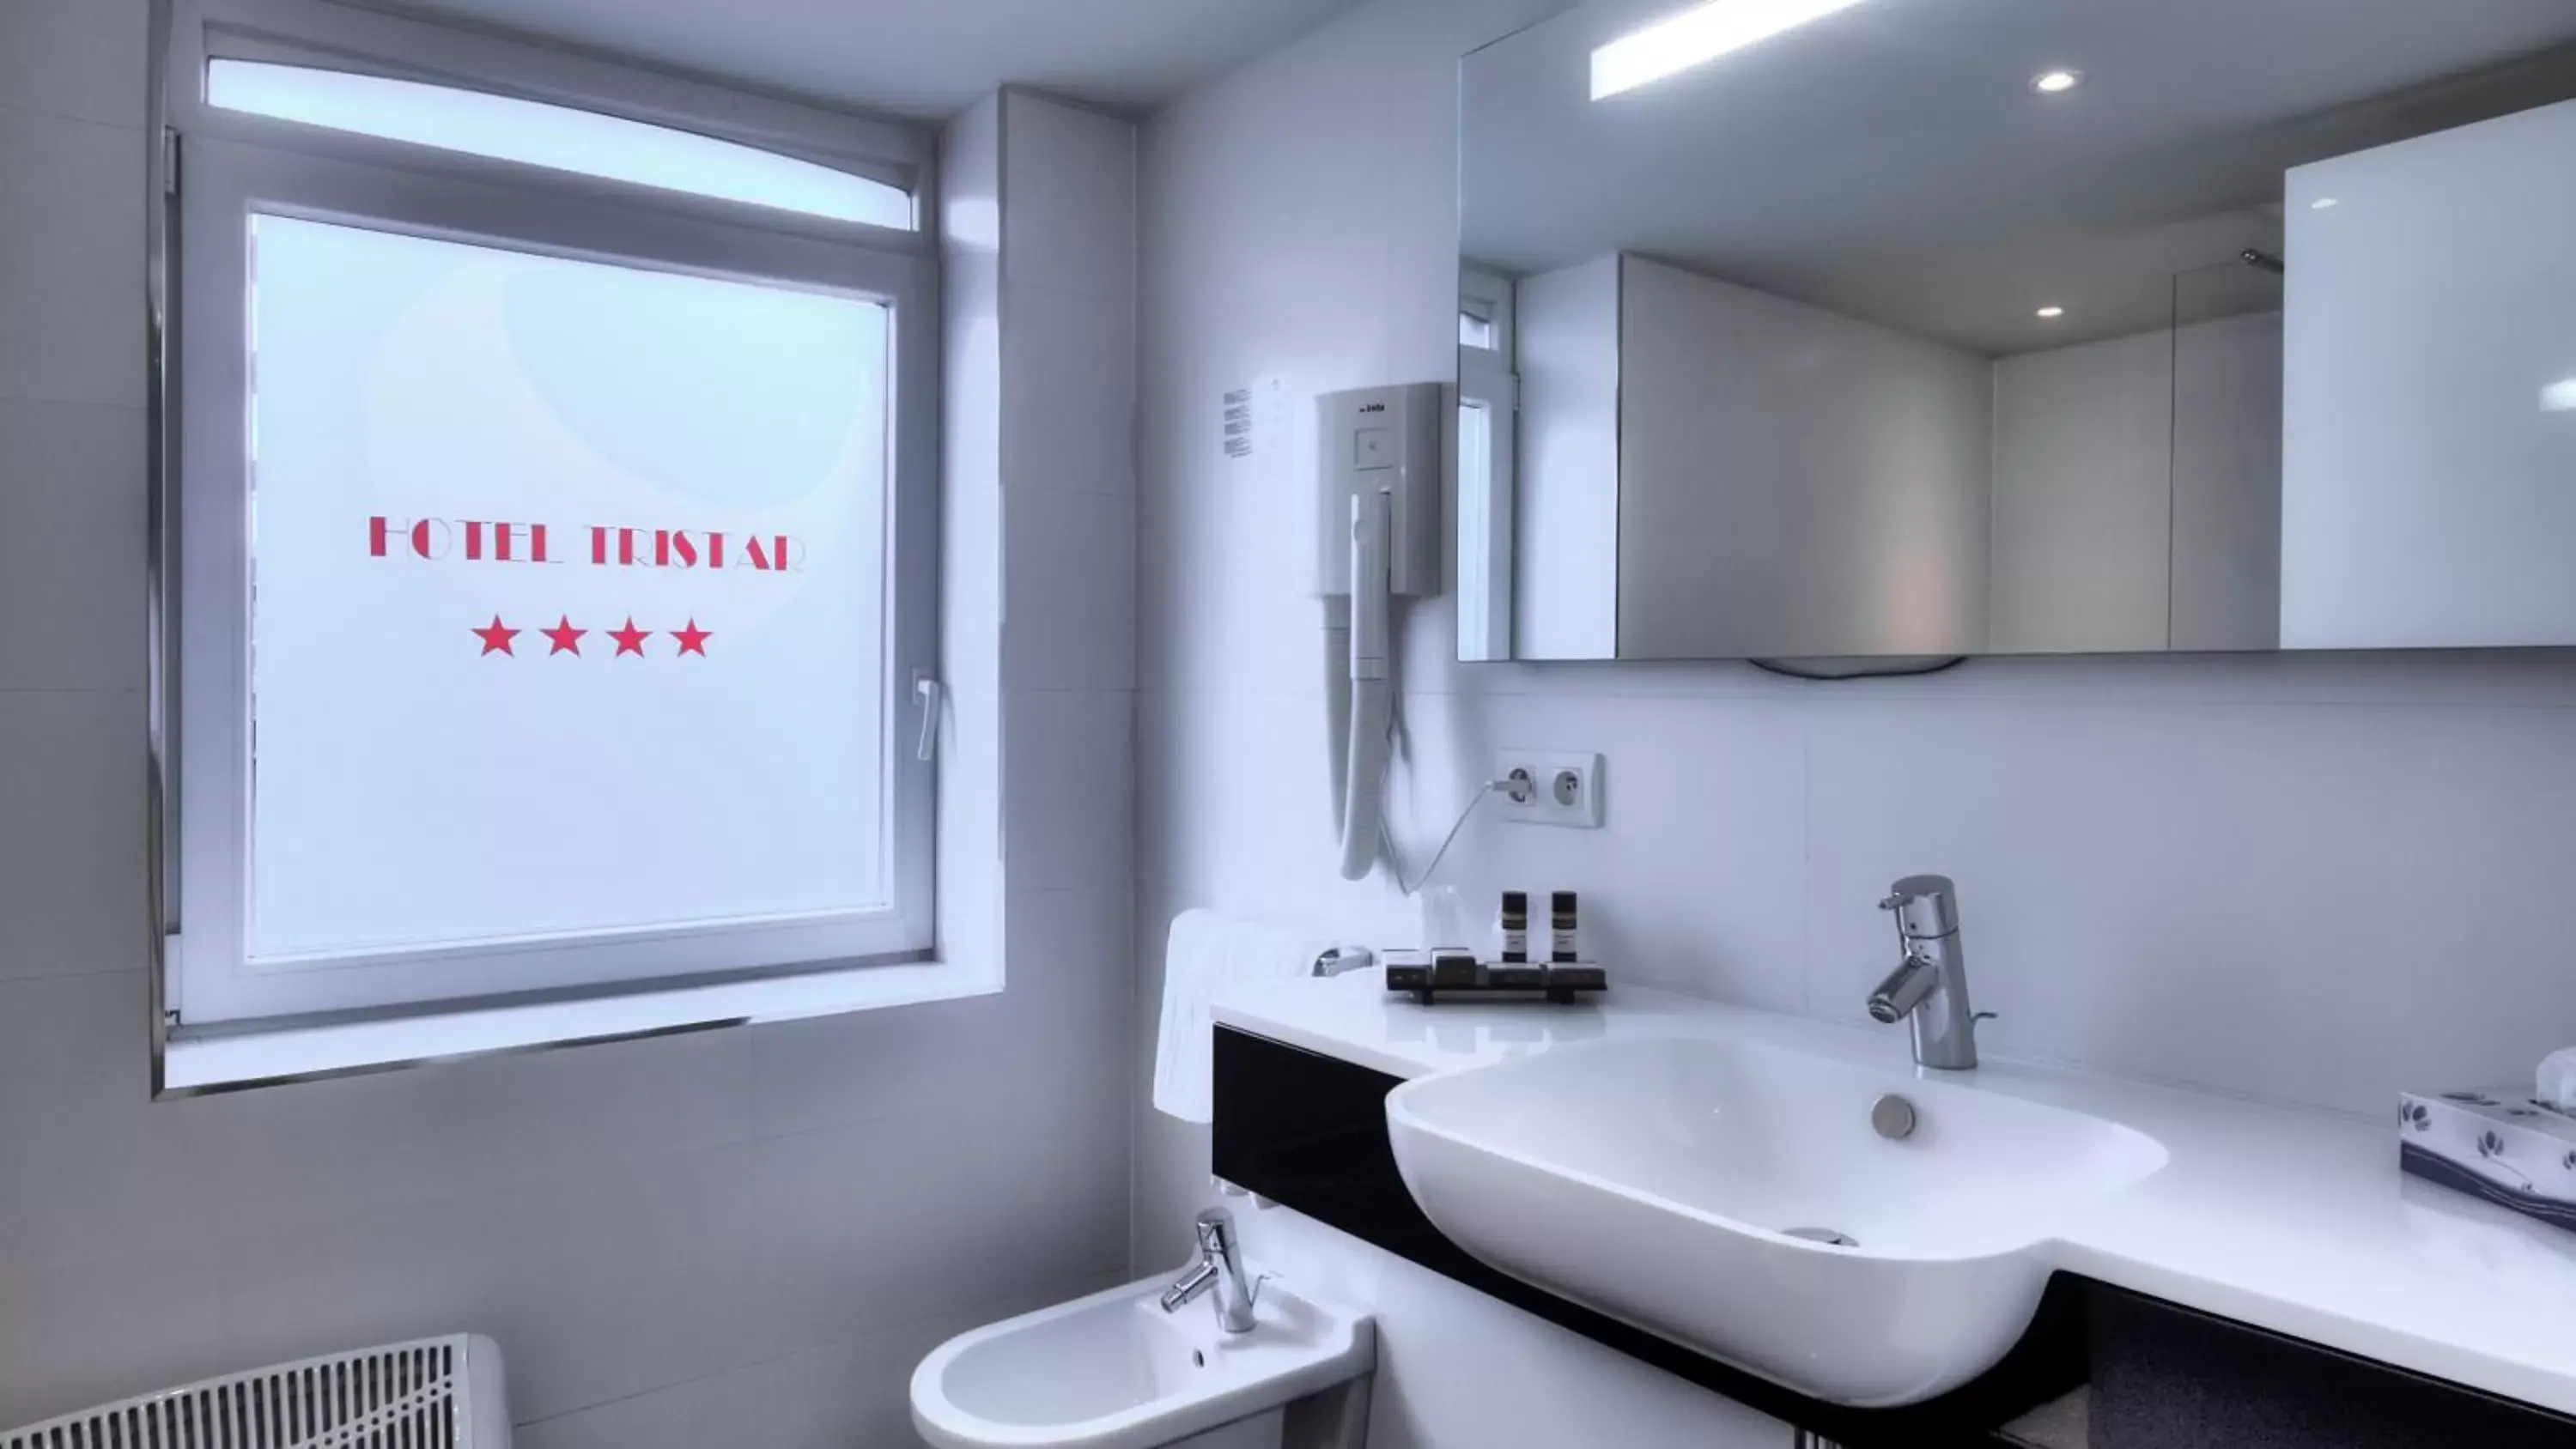 Day, Bathroom in Hotel Tristar